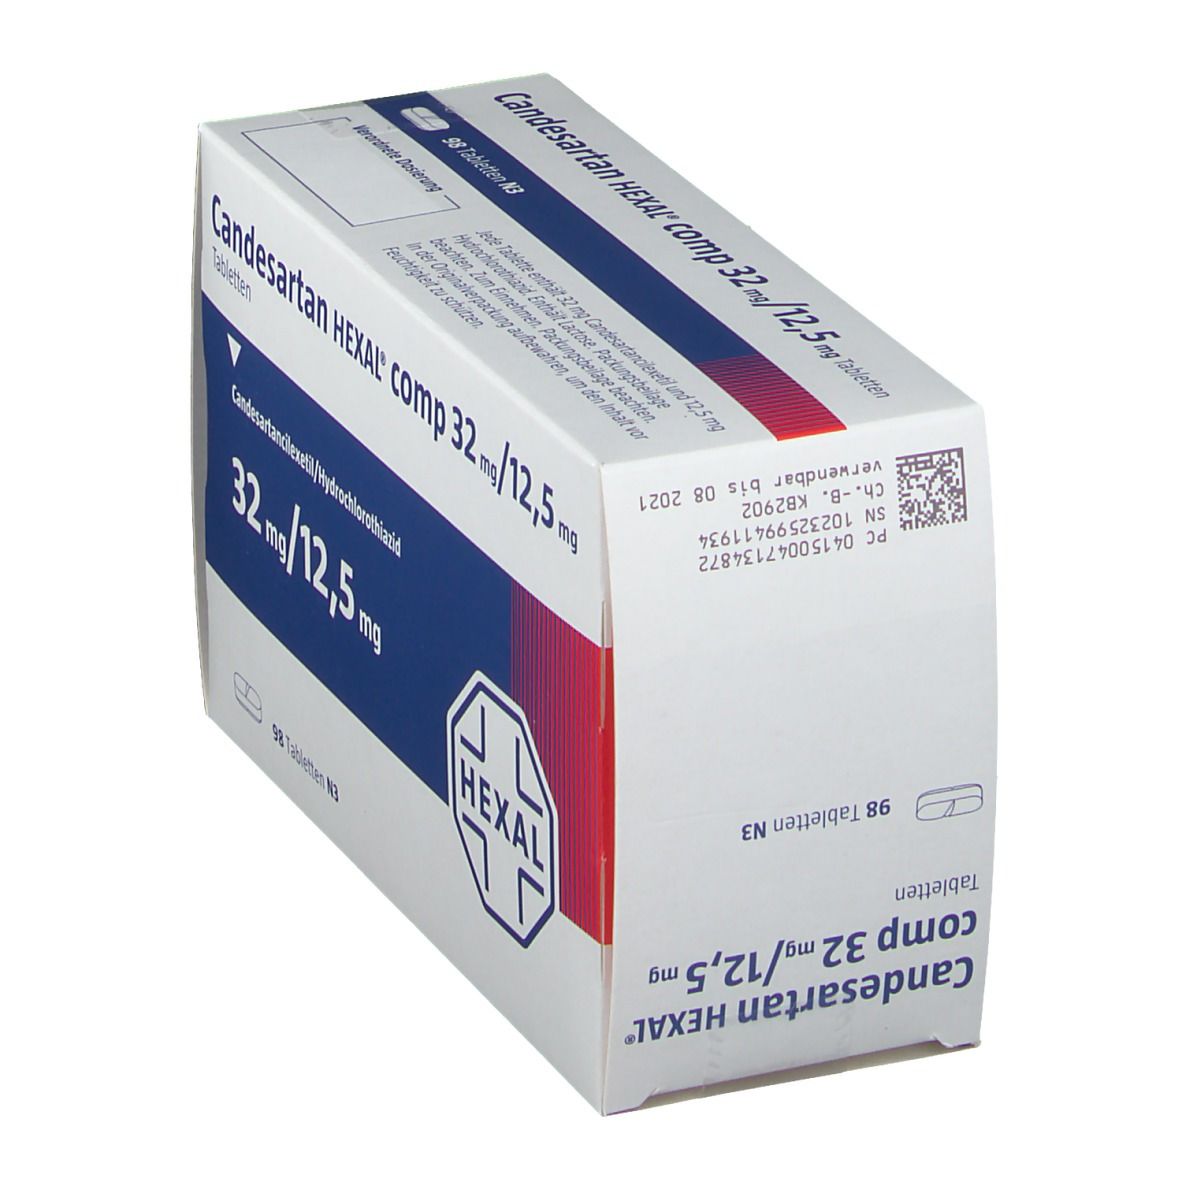 Candesartan HEXAL® comp 32 mg/12,5 mg